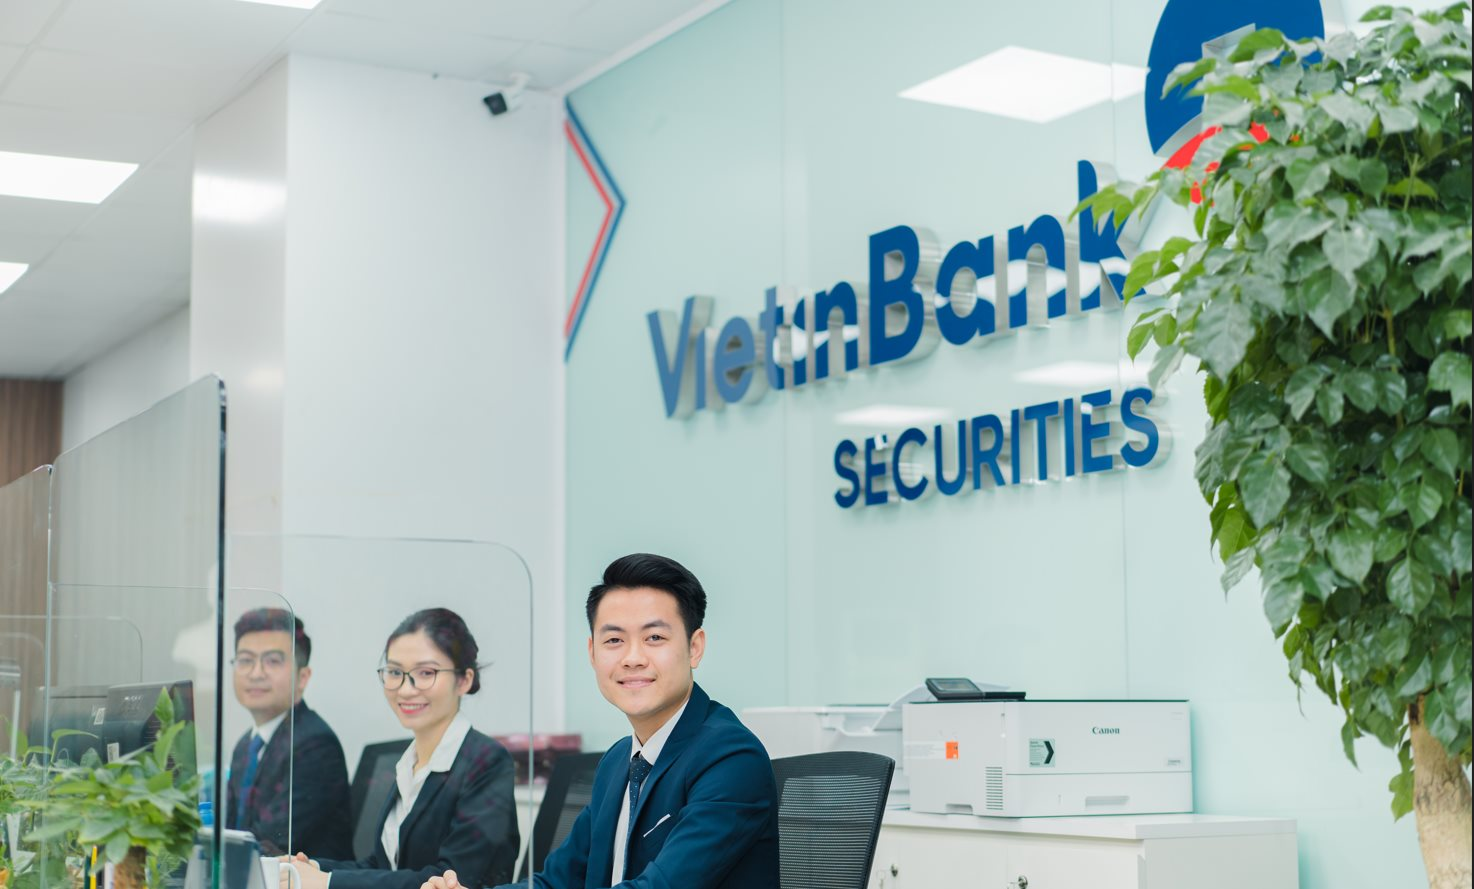 Thanh khoản thị trường cải thiện, cổ phiếu VietinBank Securities (CTS) tăng 70% chỉ sau ít phiên giao dịch